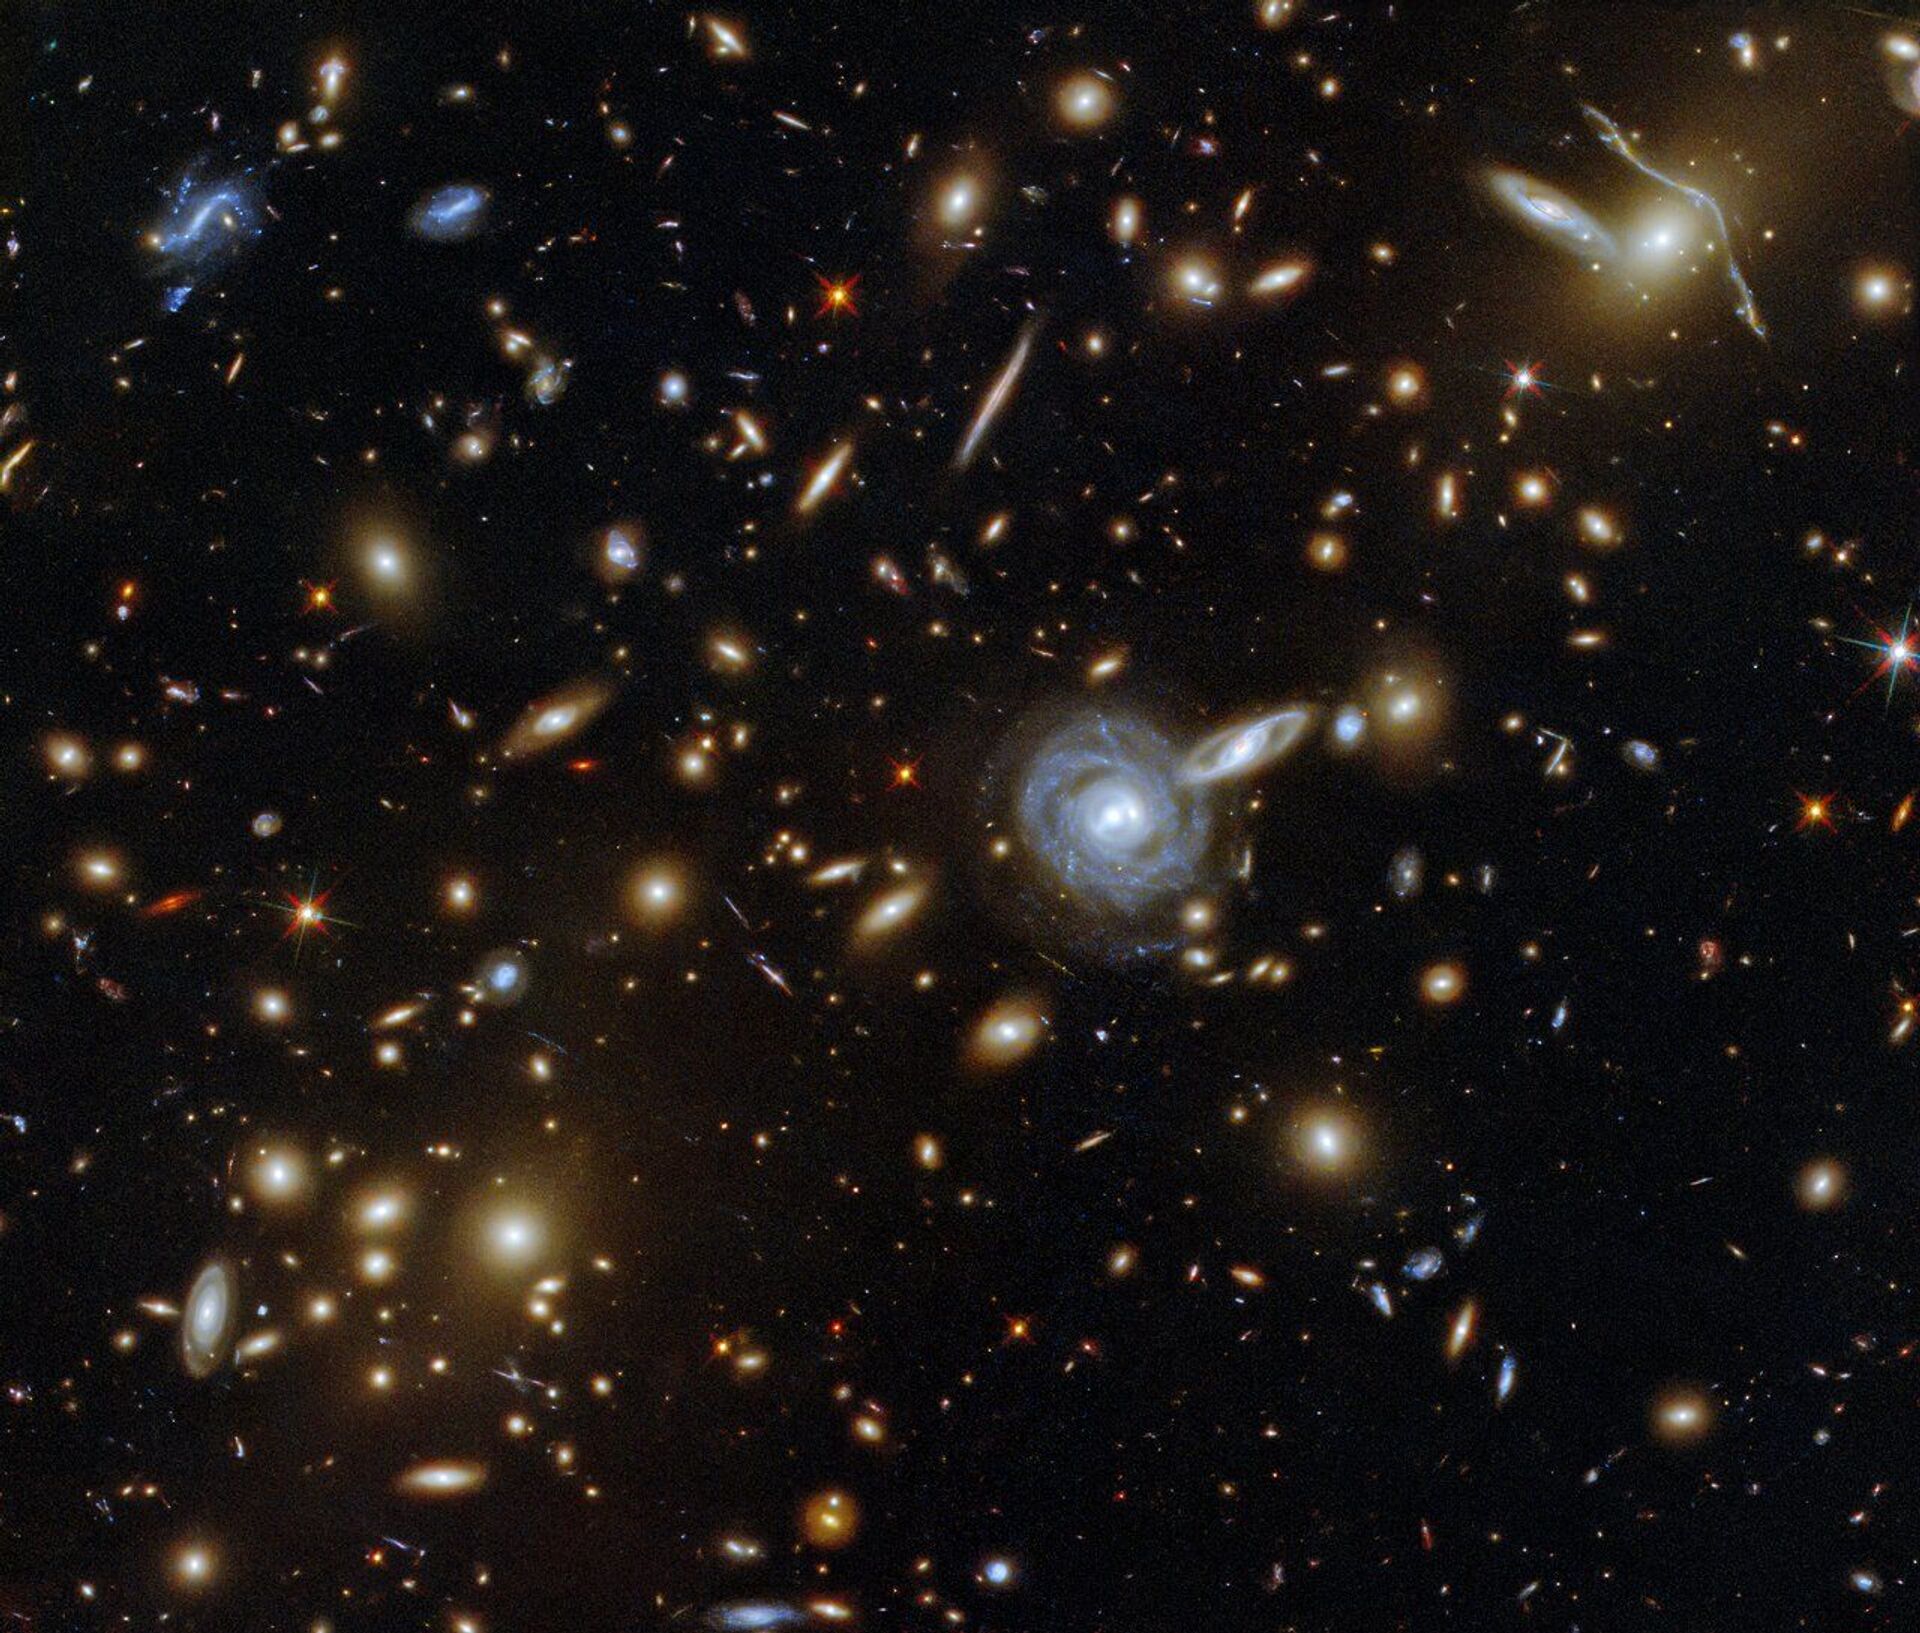 Telescópio Hubble capta aglomerado massivo de galáxias a mais de 3 bilhões de anos-luz (FOTO) - Sputnik Brasil, 1920, 18.05.2021